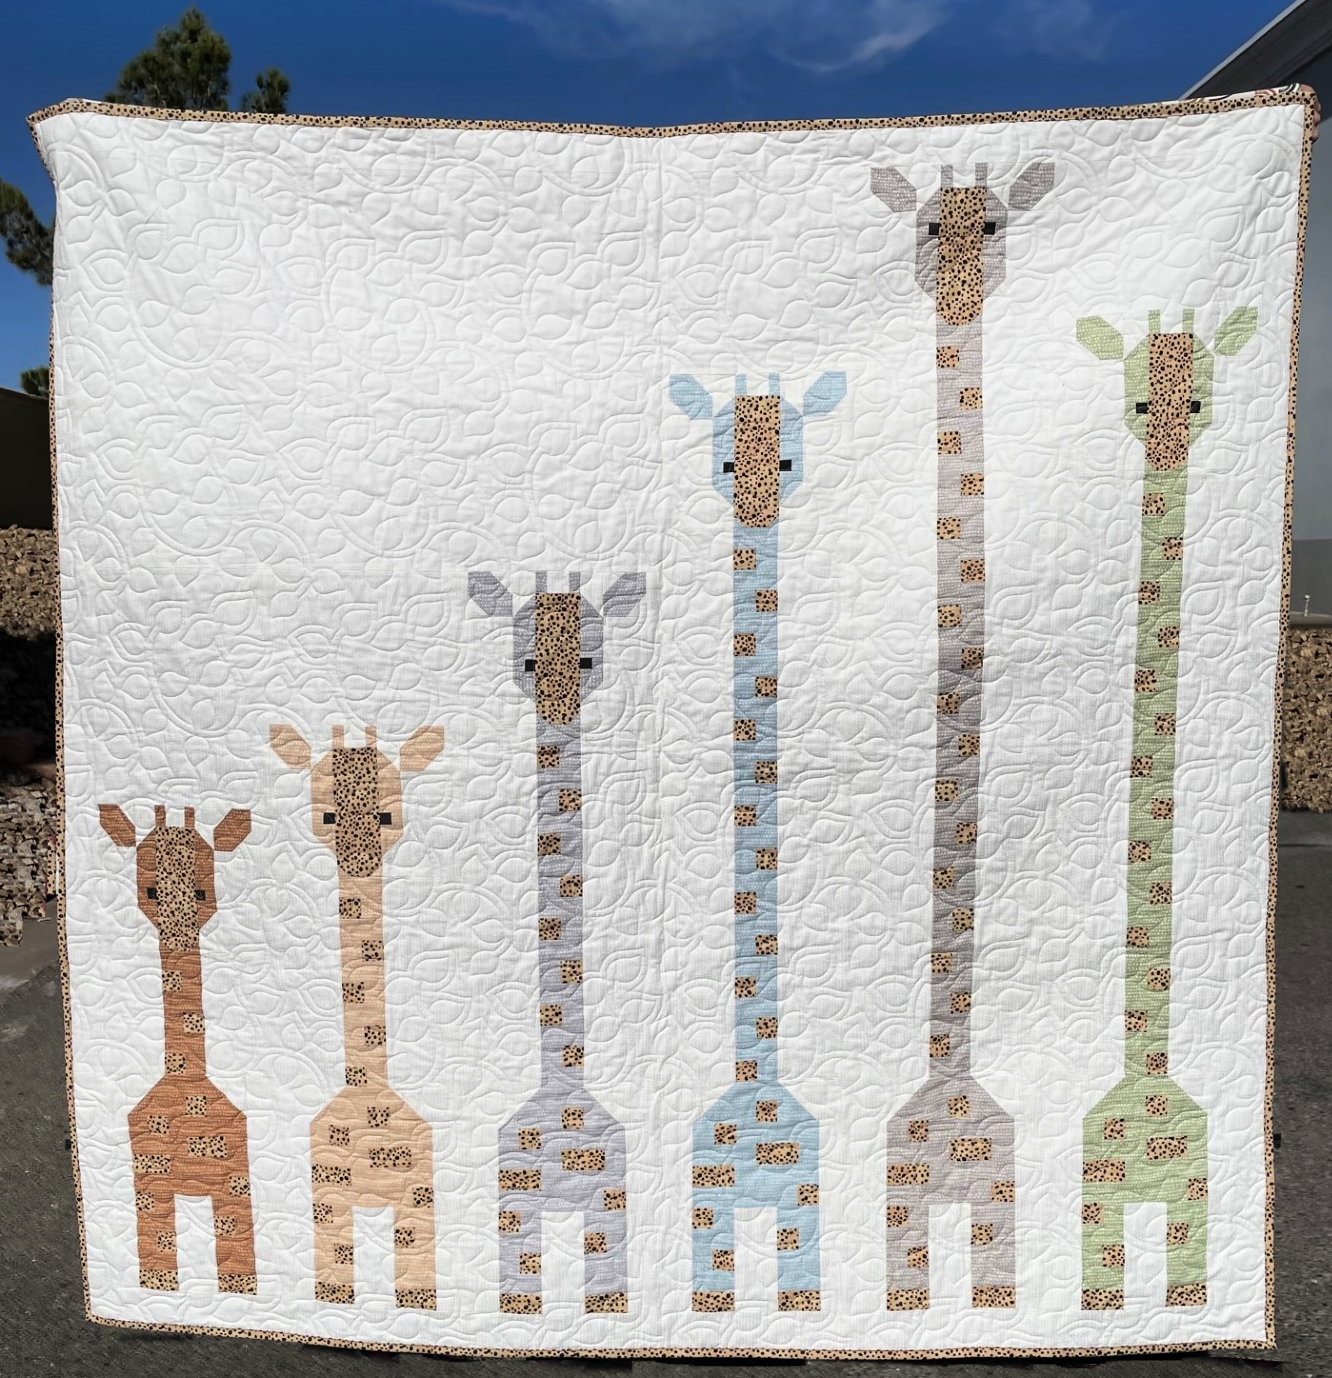 Giraffes In A Row